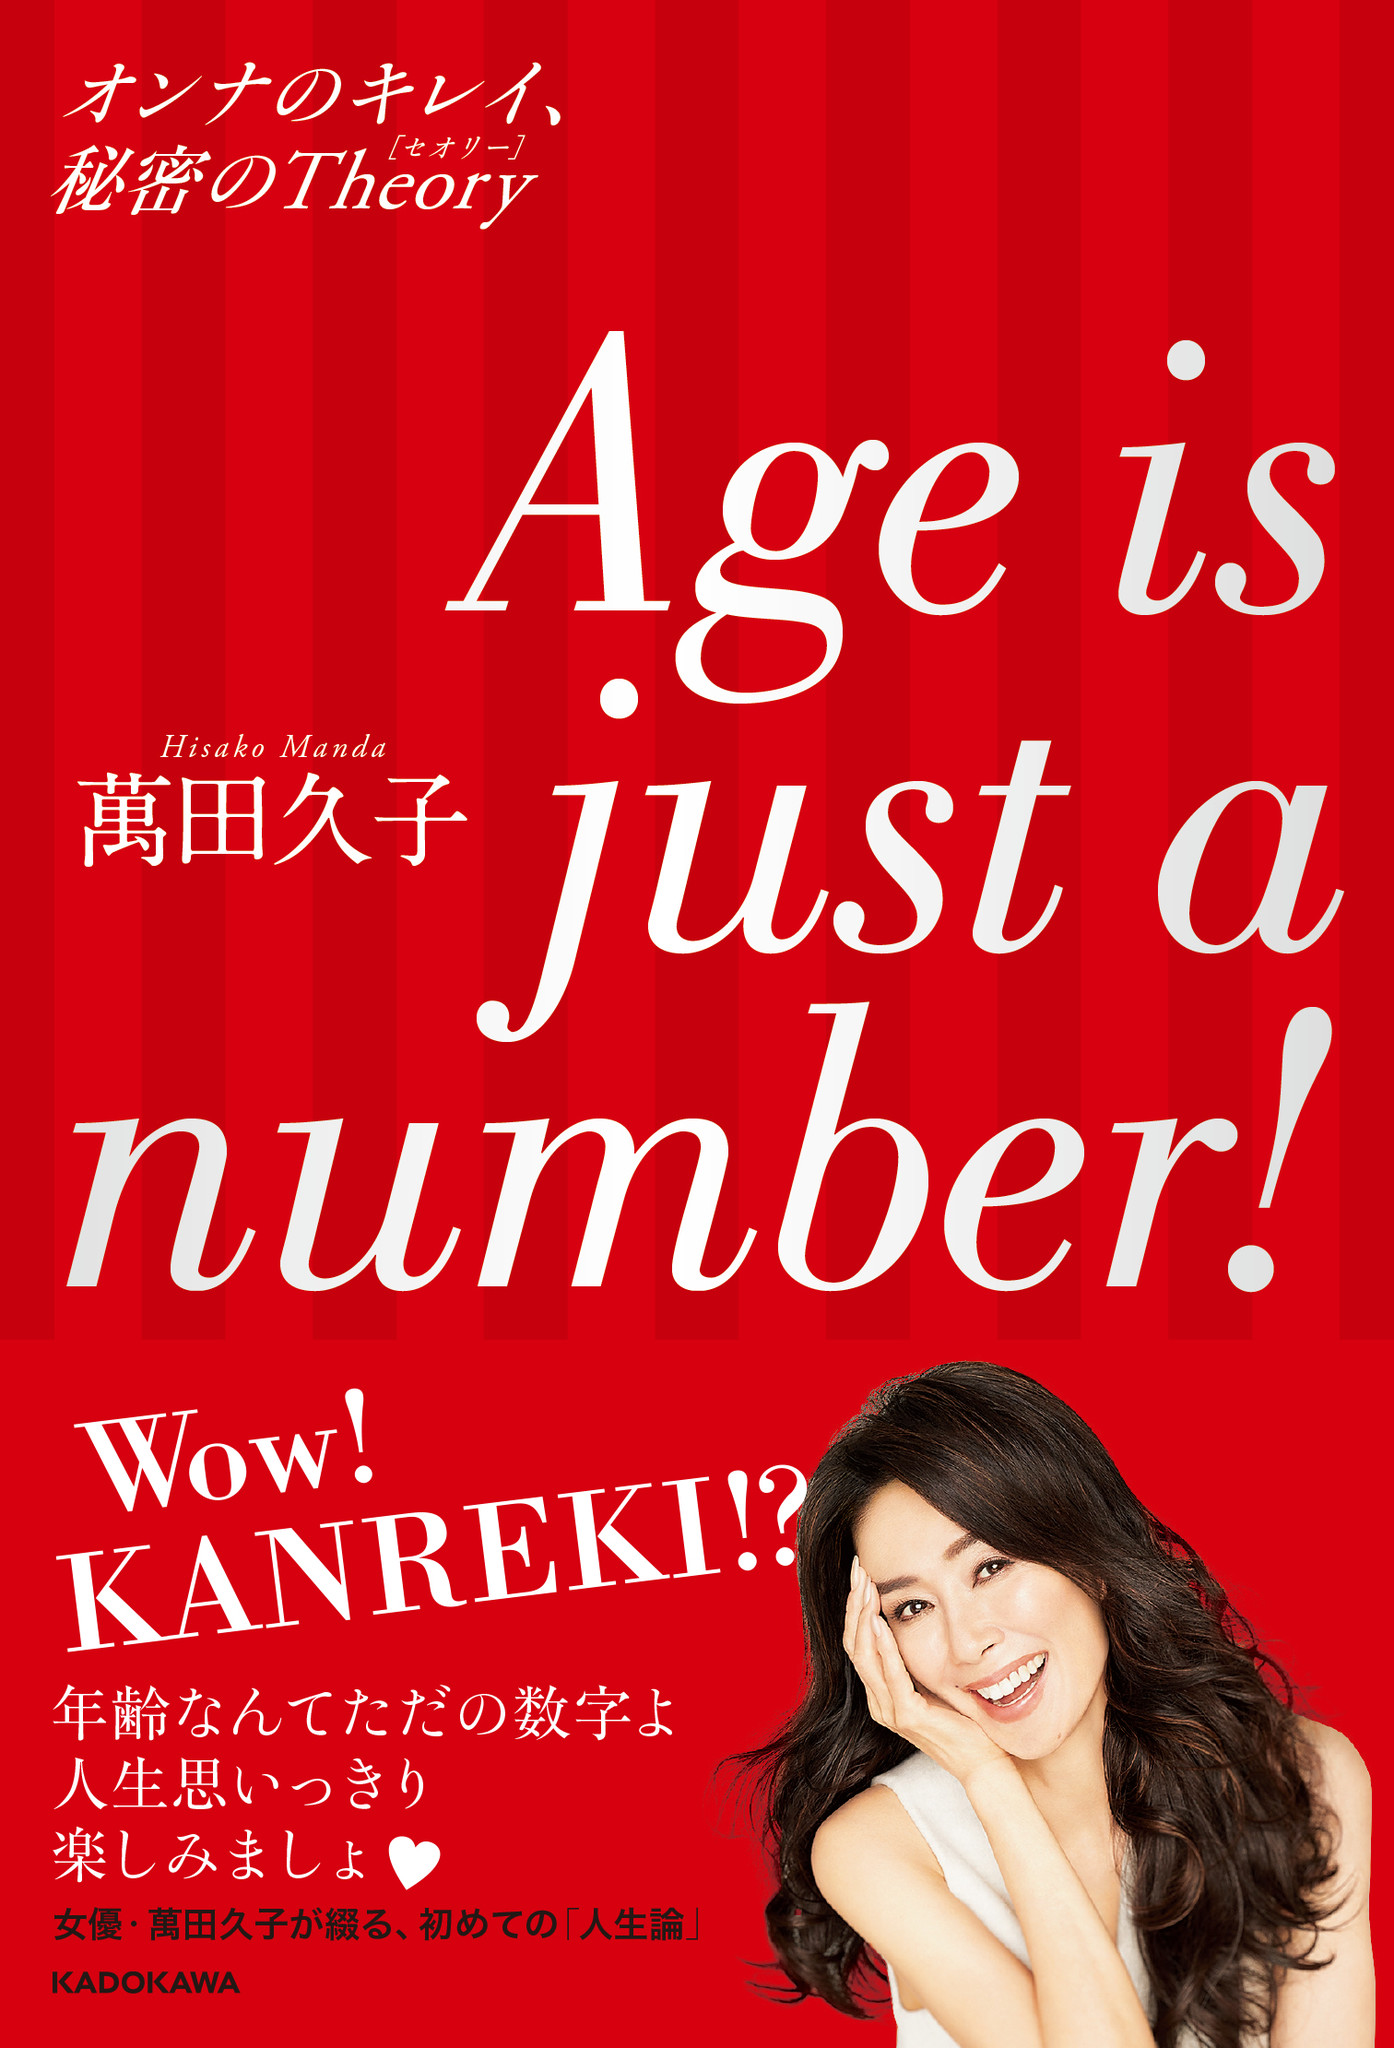 年齢なんてただの数字よ 人生思いっきり楽しみましょ 女優 萬田久子が綴る いまを素敵に生きるコツ 株式会社kadokawaのプレスリリース